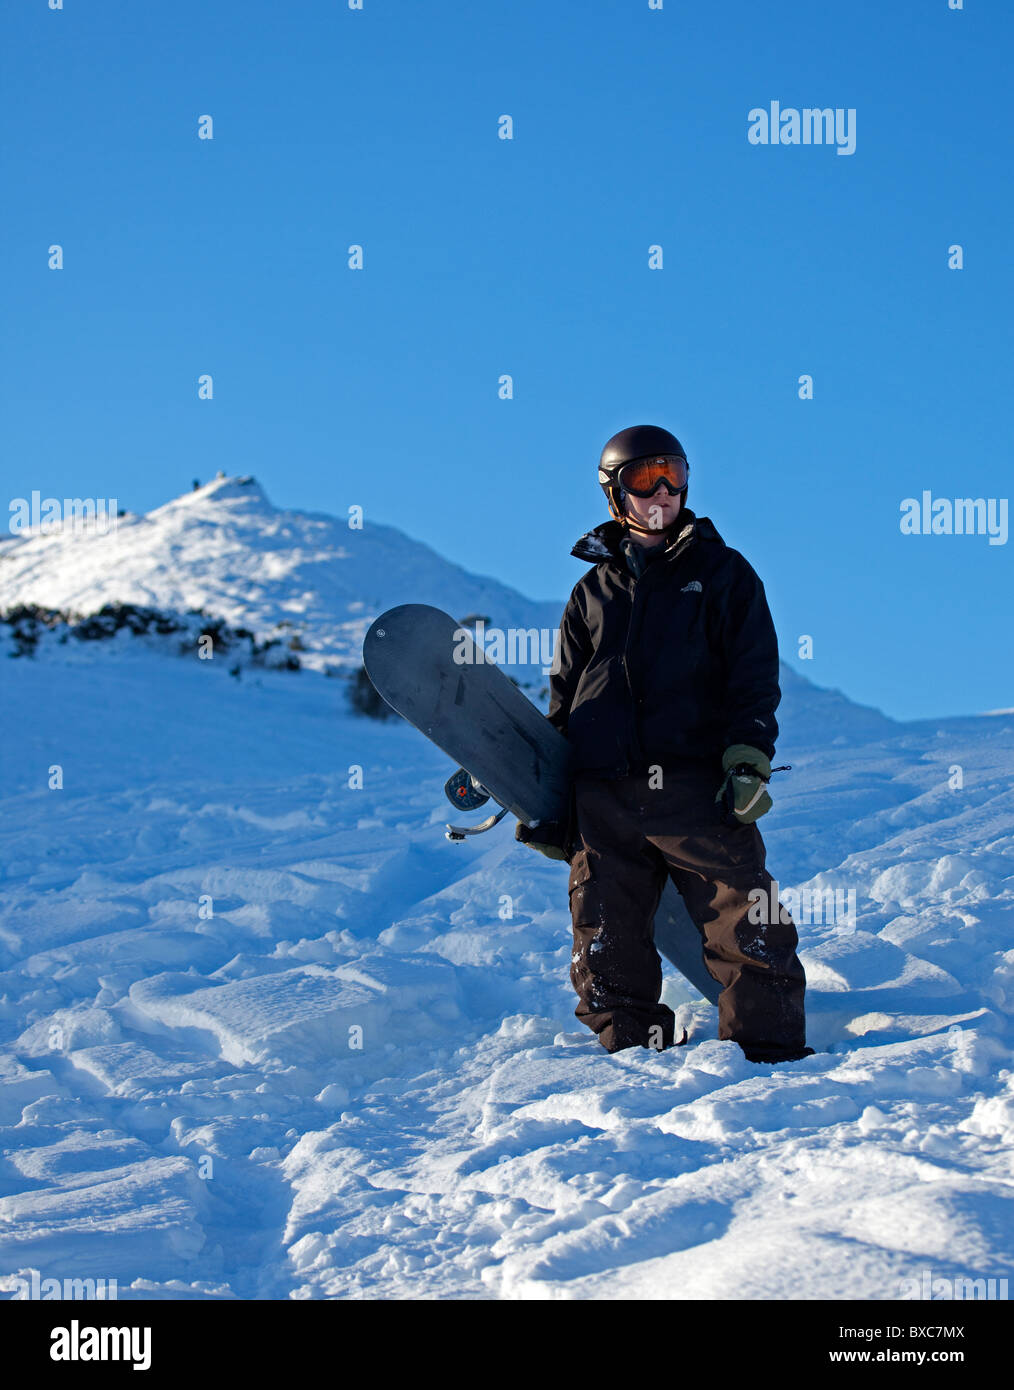 Snowboarder entouré par la neige, Arthurs Seat, Edinburgh Scotland UK Europe Banque D'Images